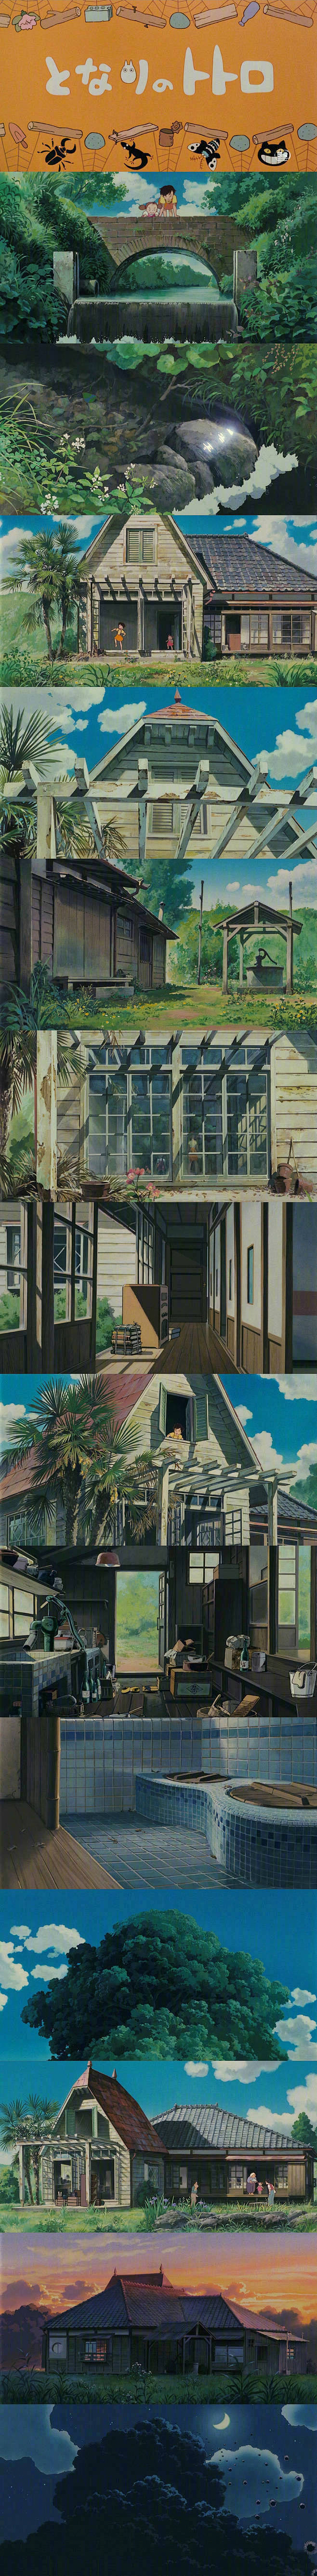 绘画学习

宫崎骏的美好世界，咋看都不...